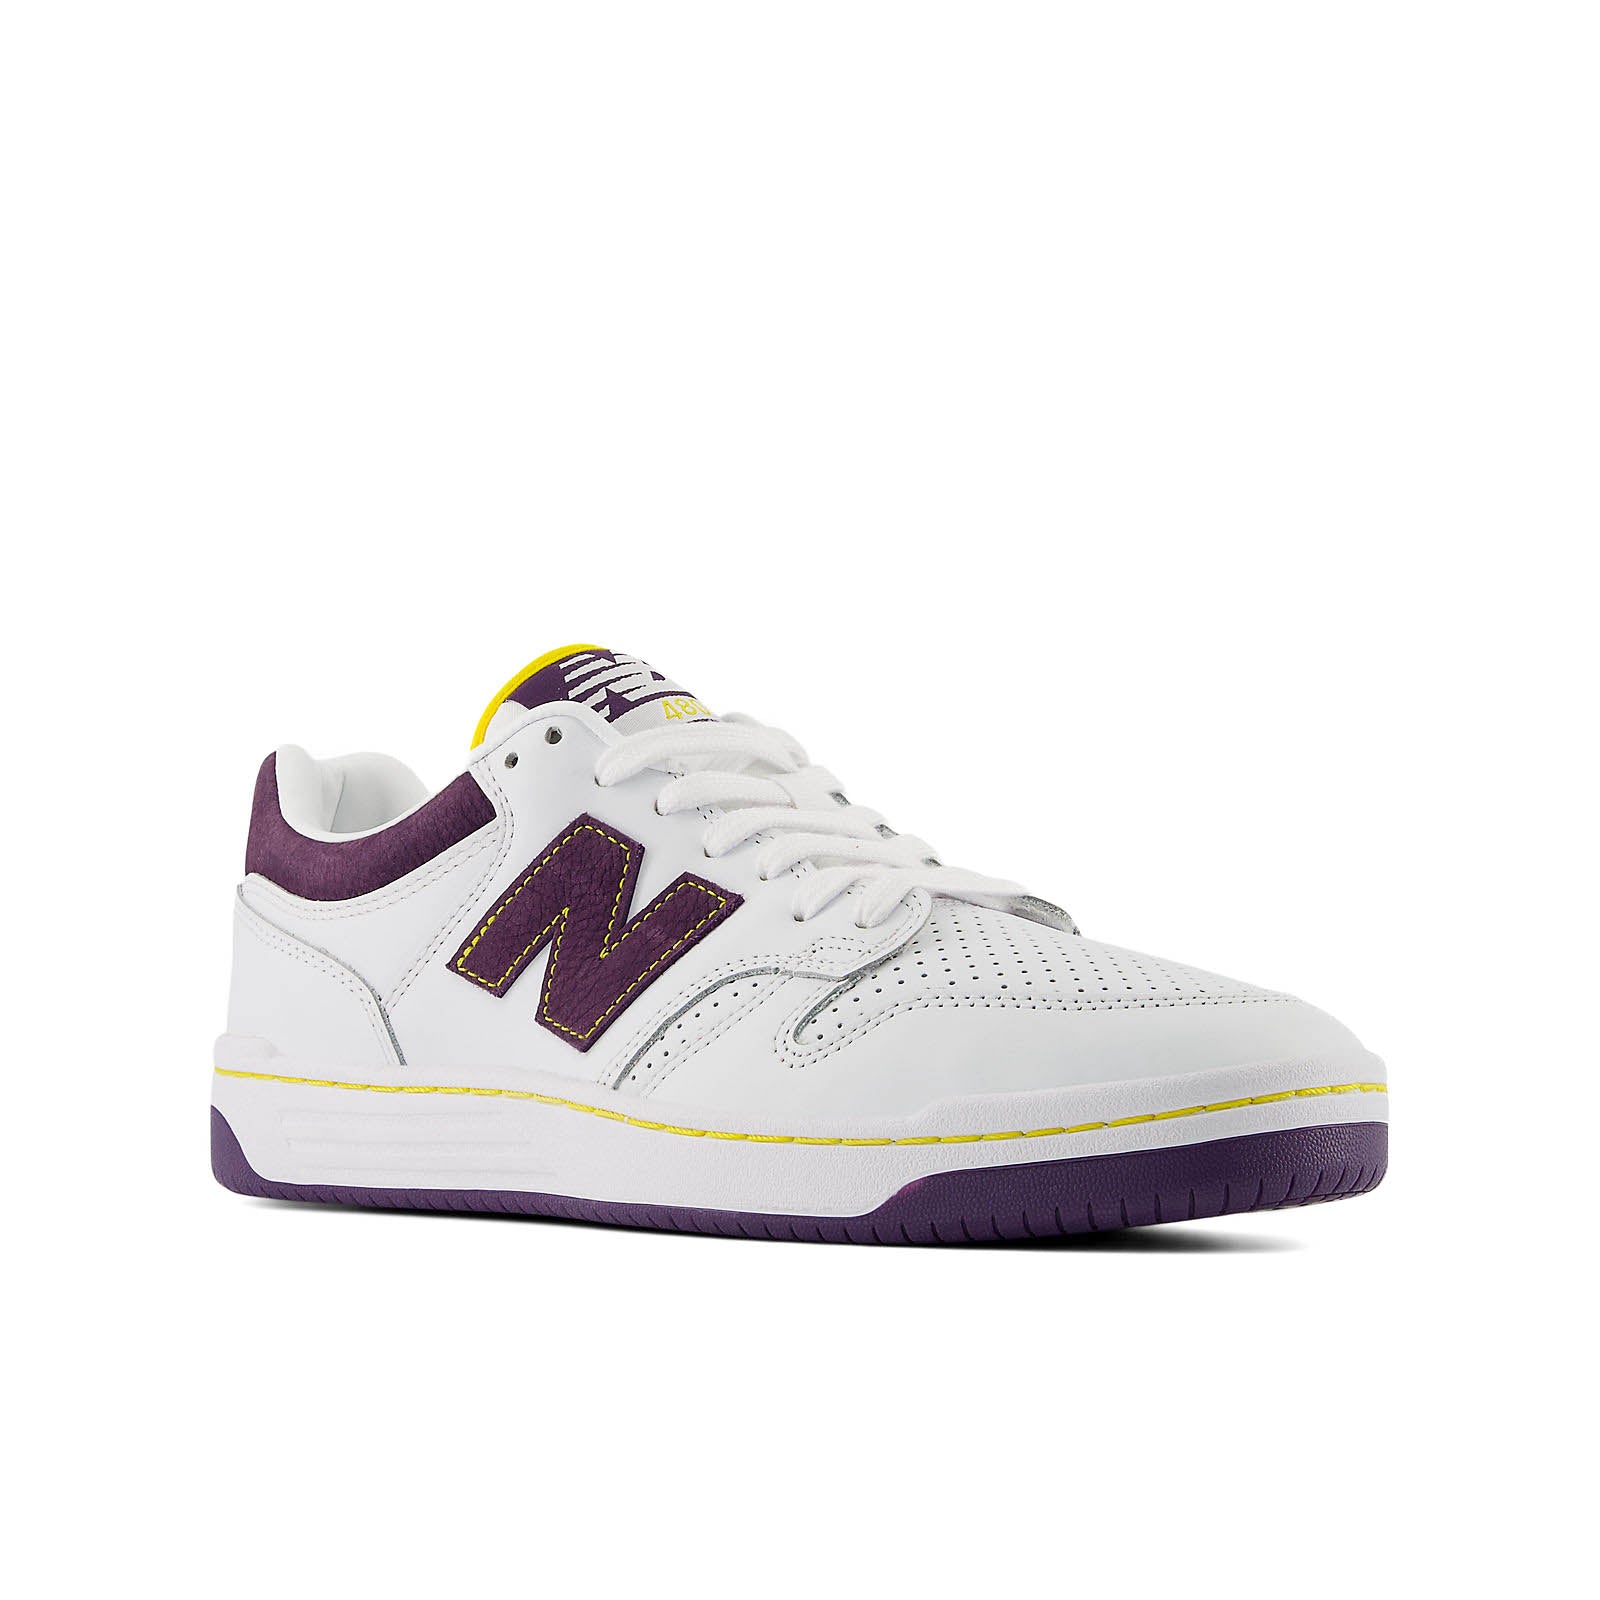 NB Numeric 480 - White/Purple